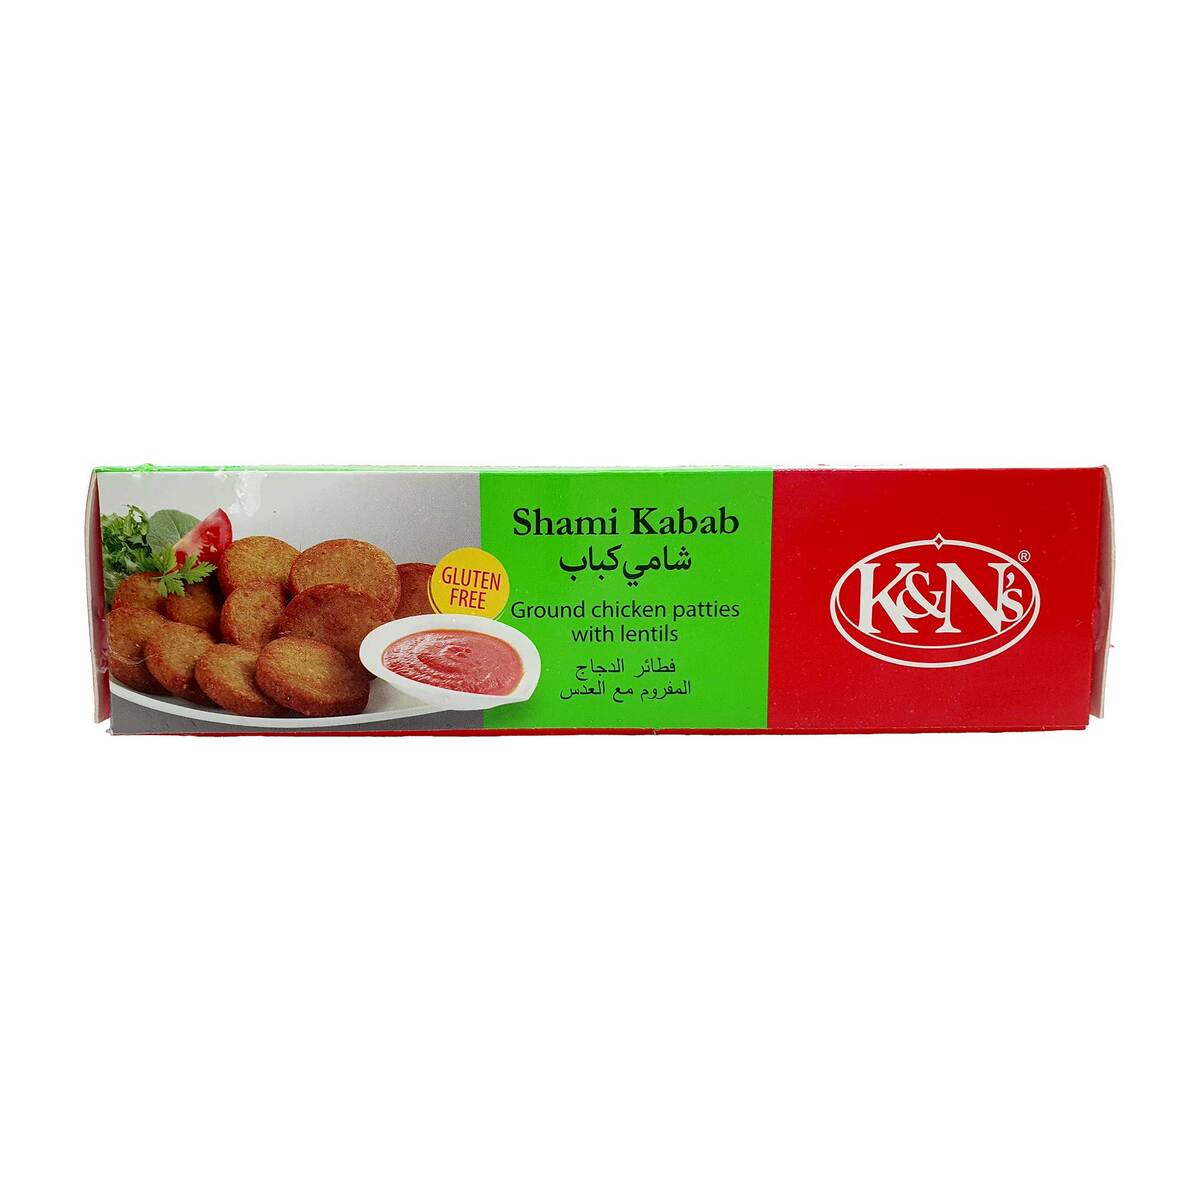 K&N's Chicken Shami Kabab 252 g